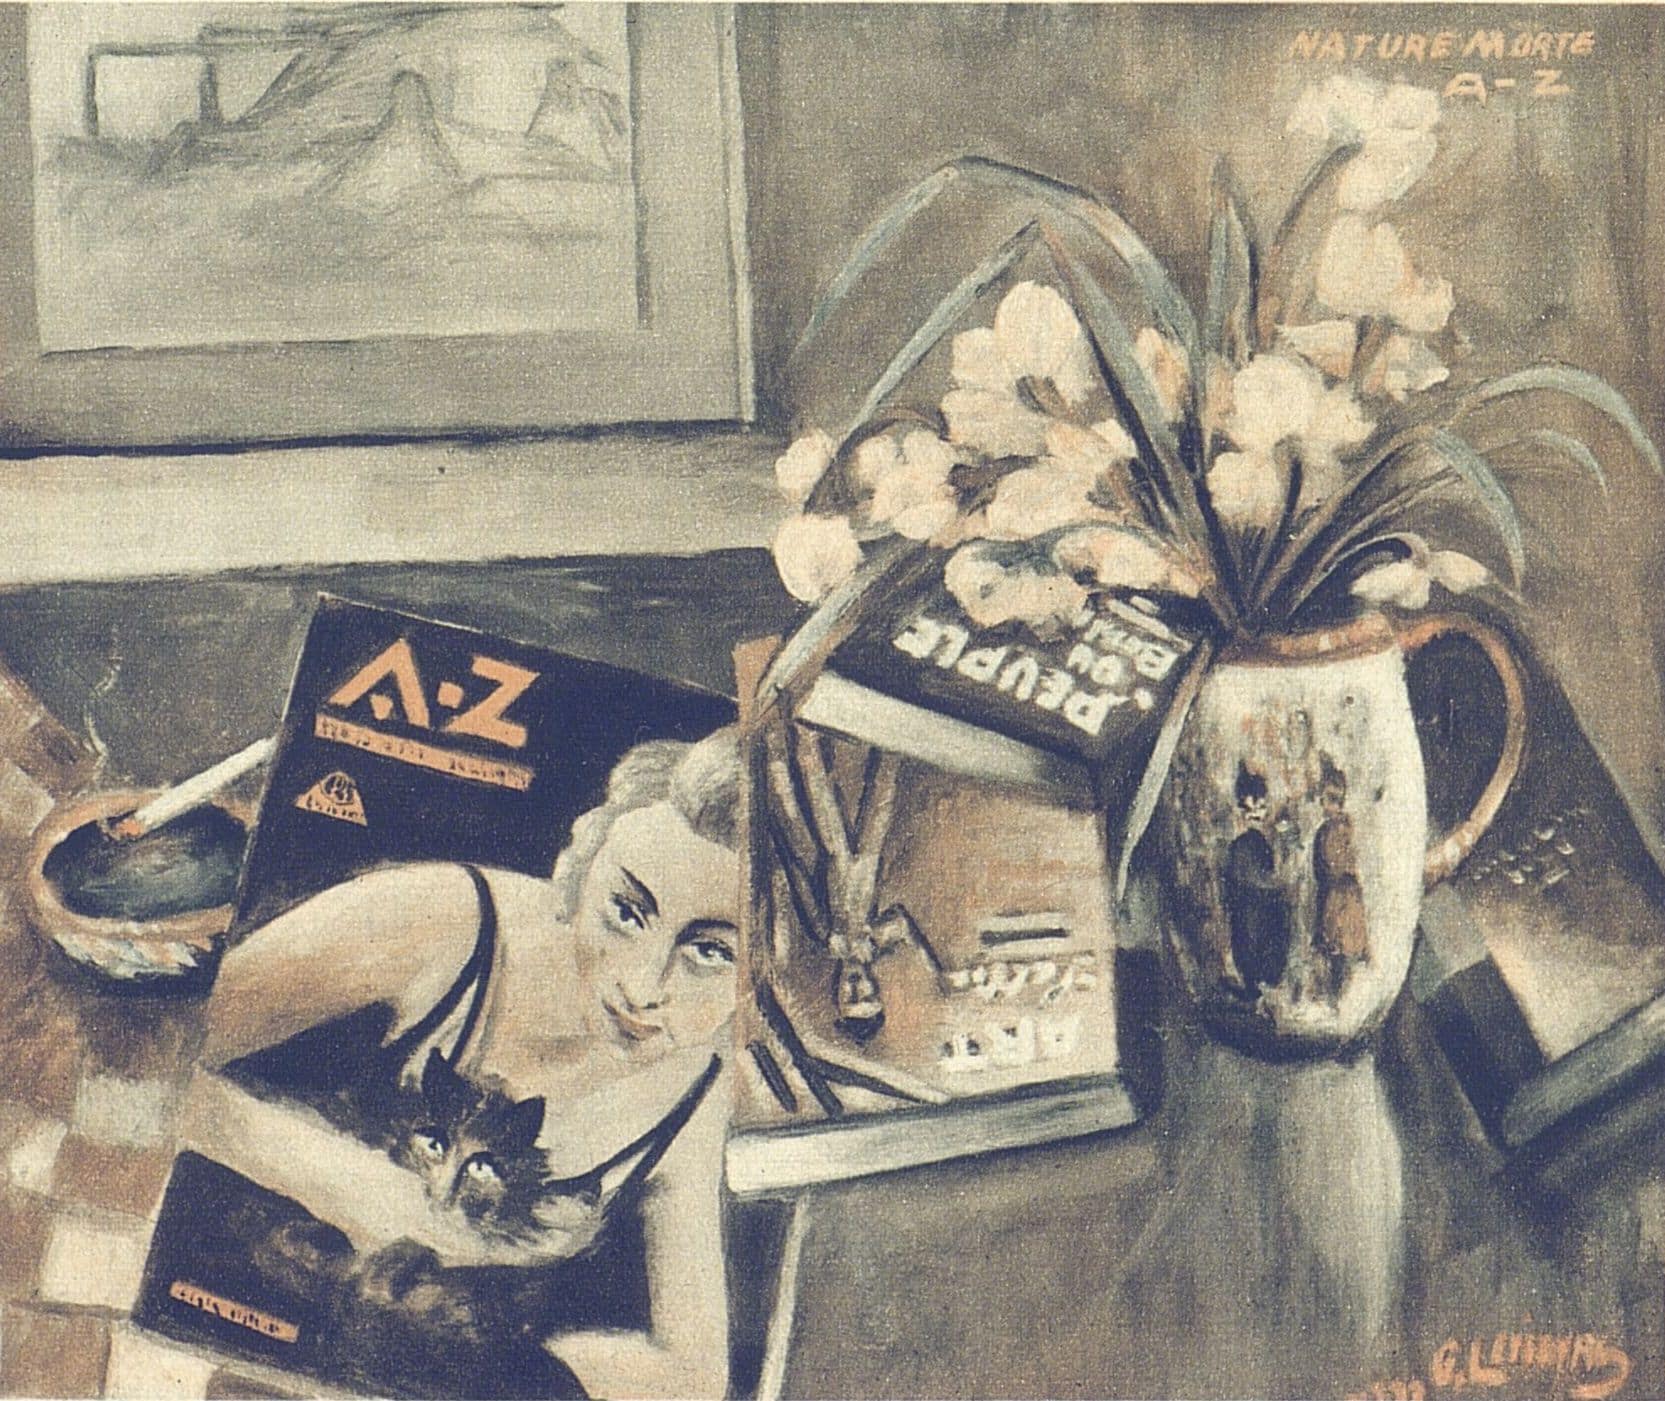 Illustration du magazine A-Z posé sur une table à côté d'un vase de fleurs